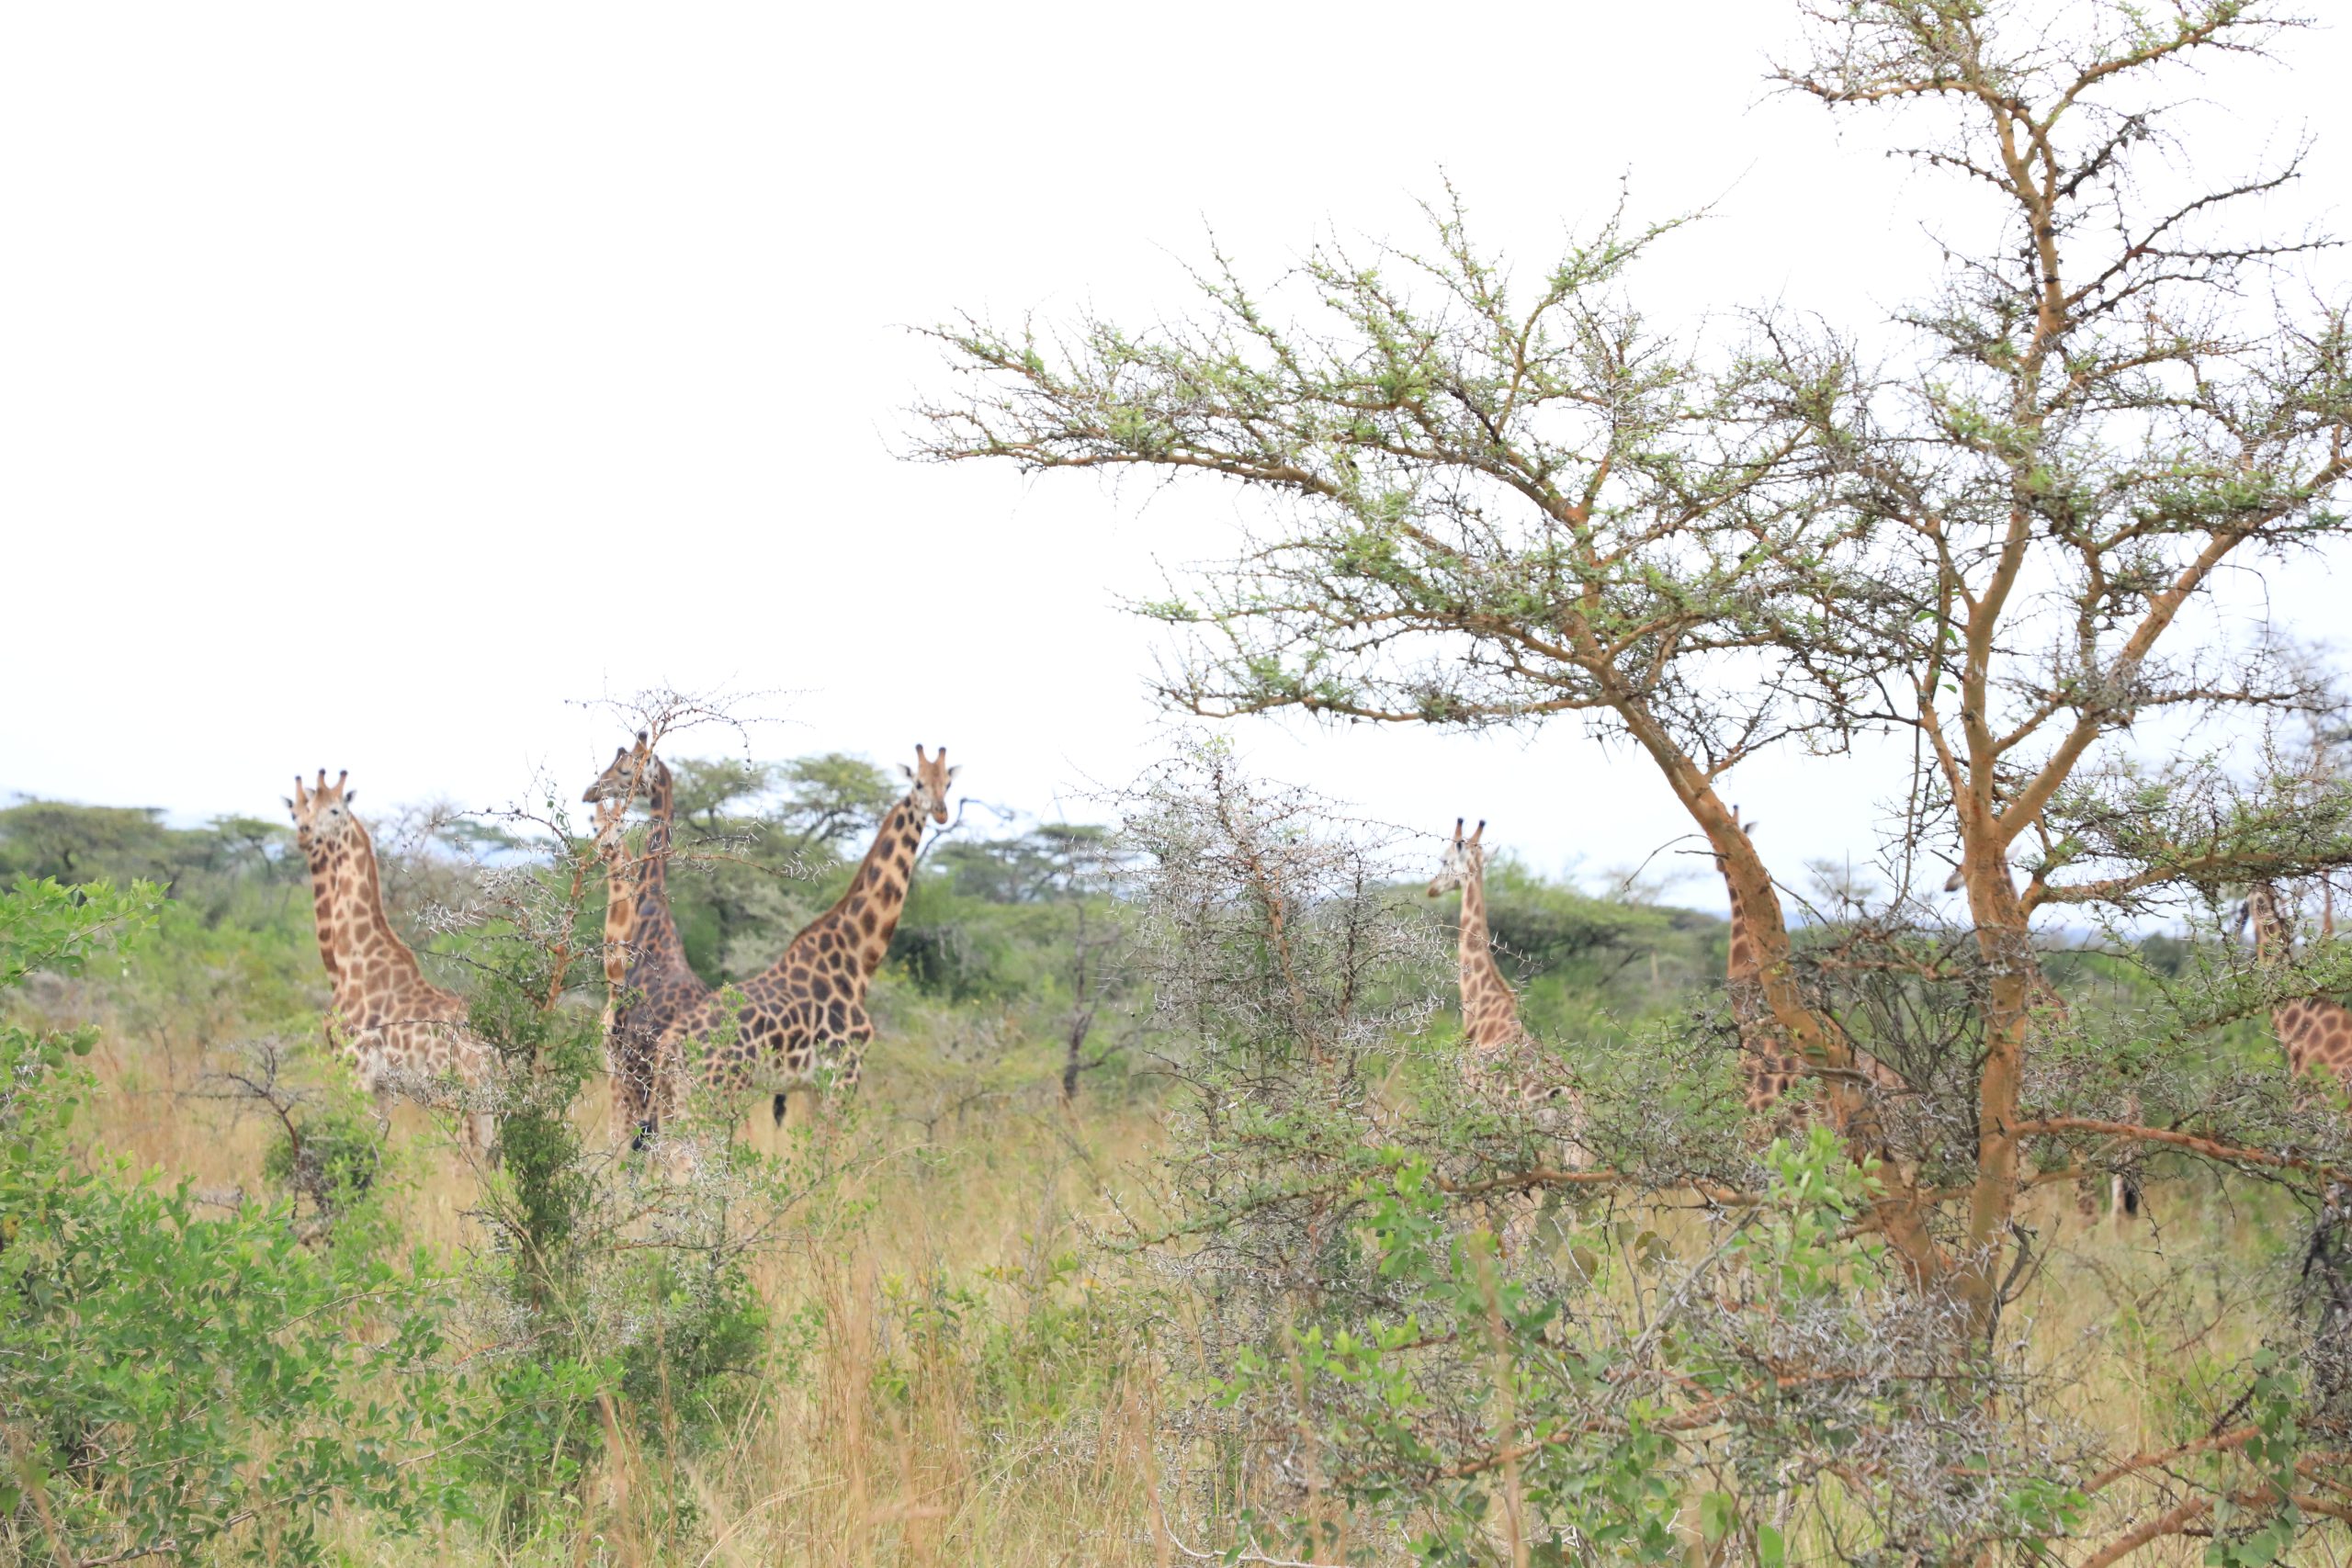 Giraffes at Ruma Park